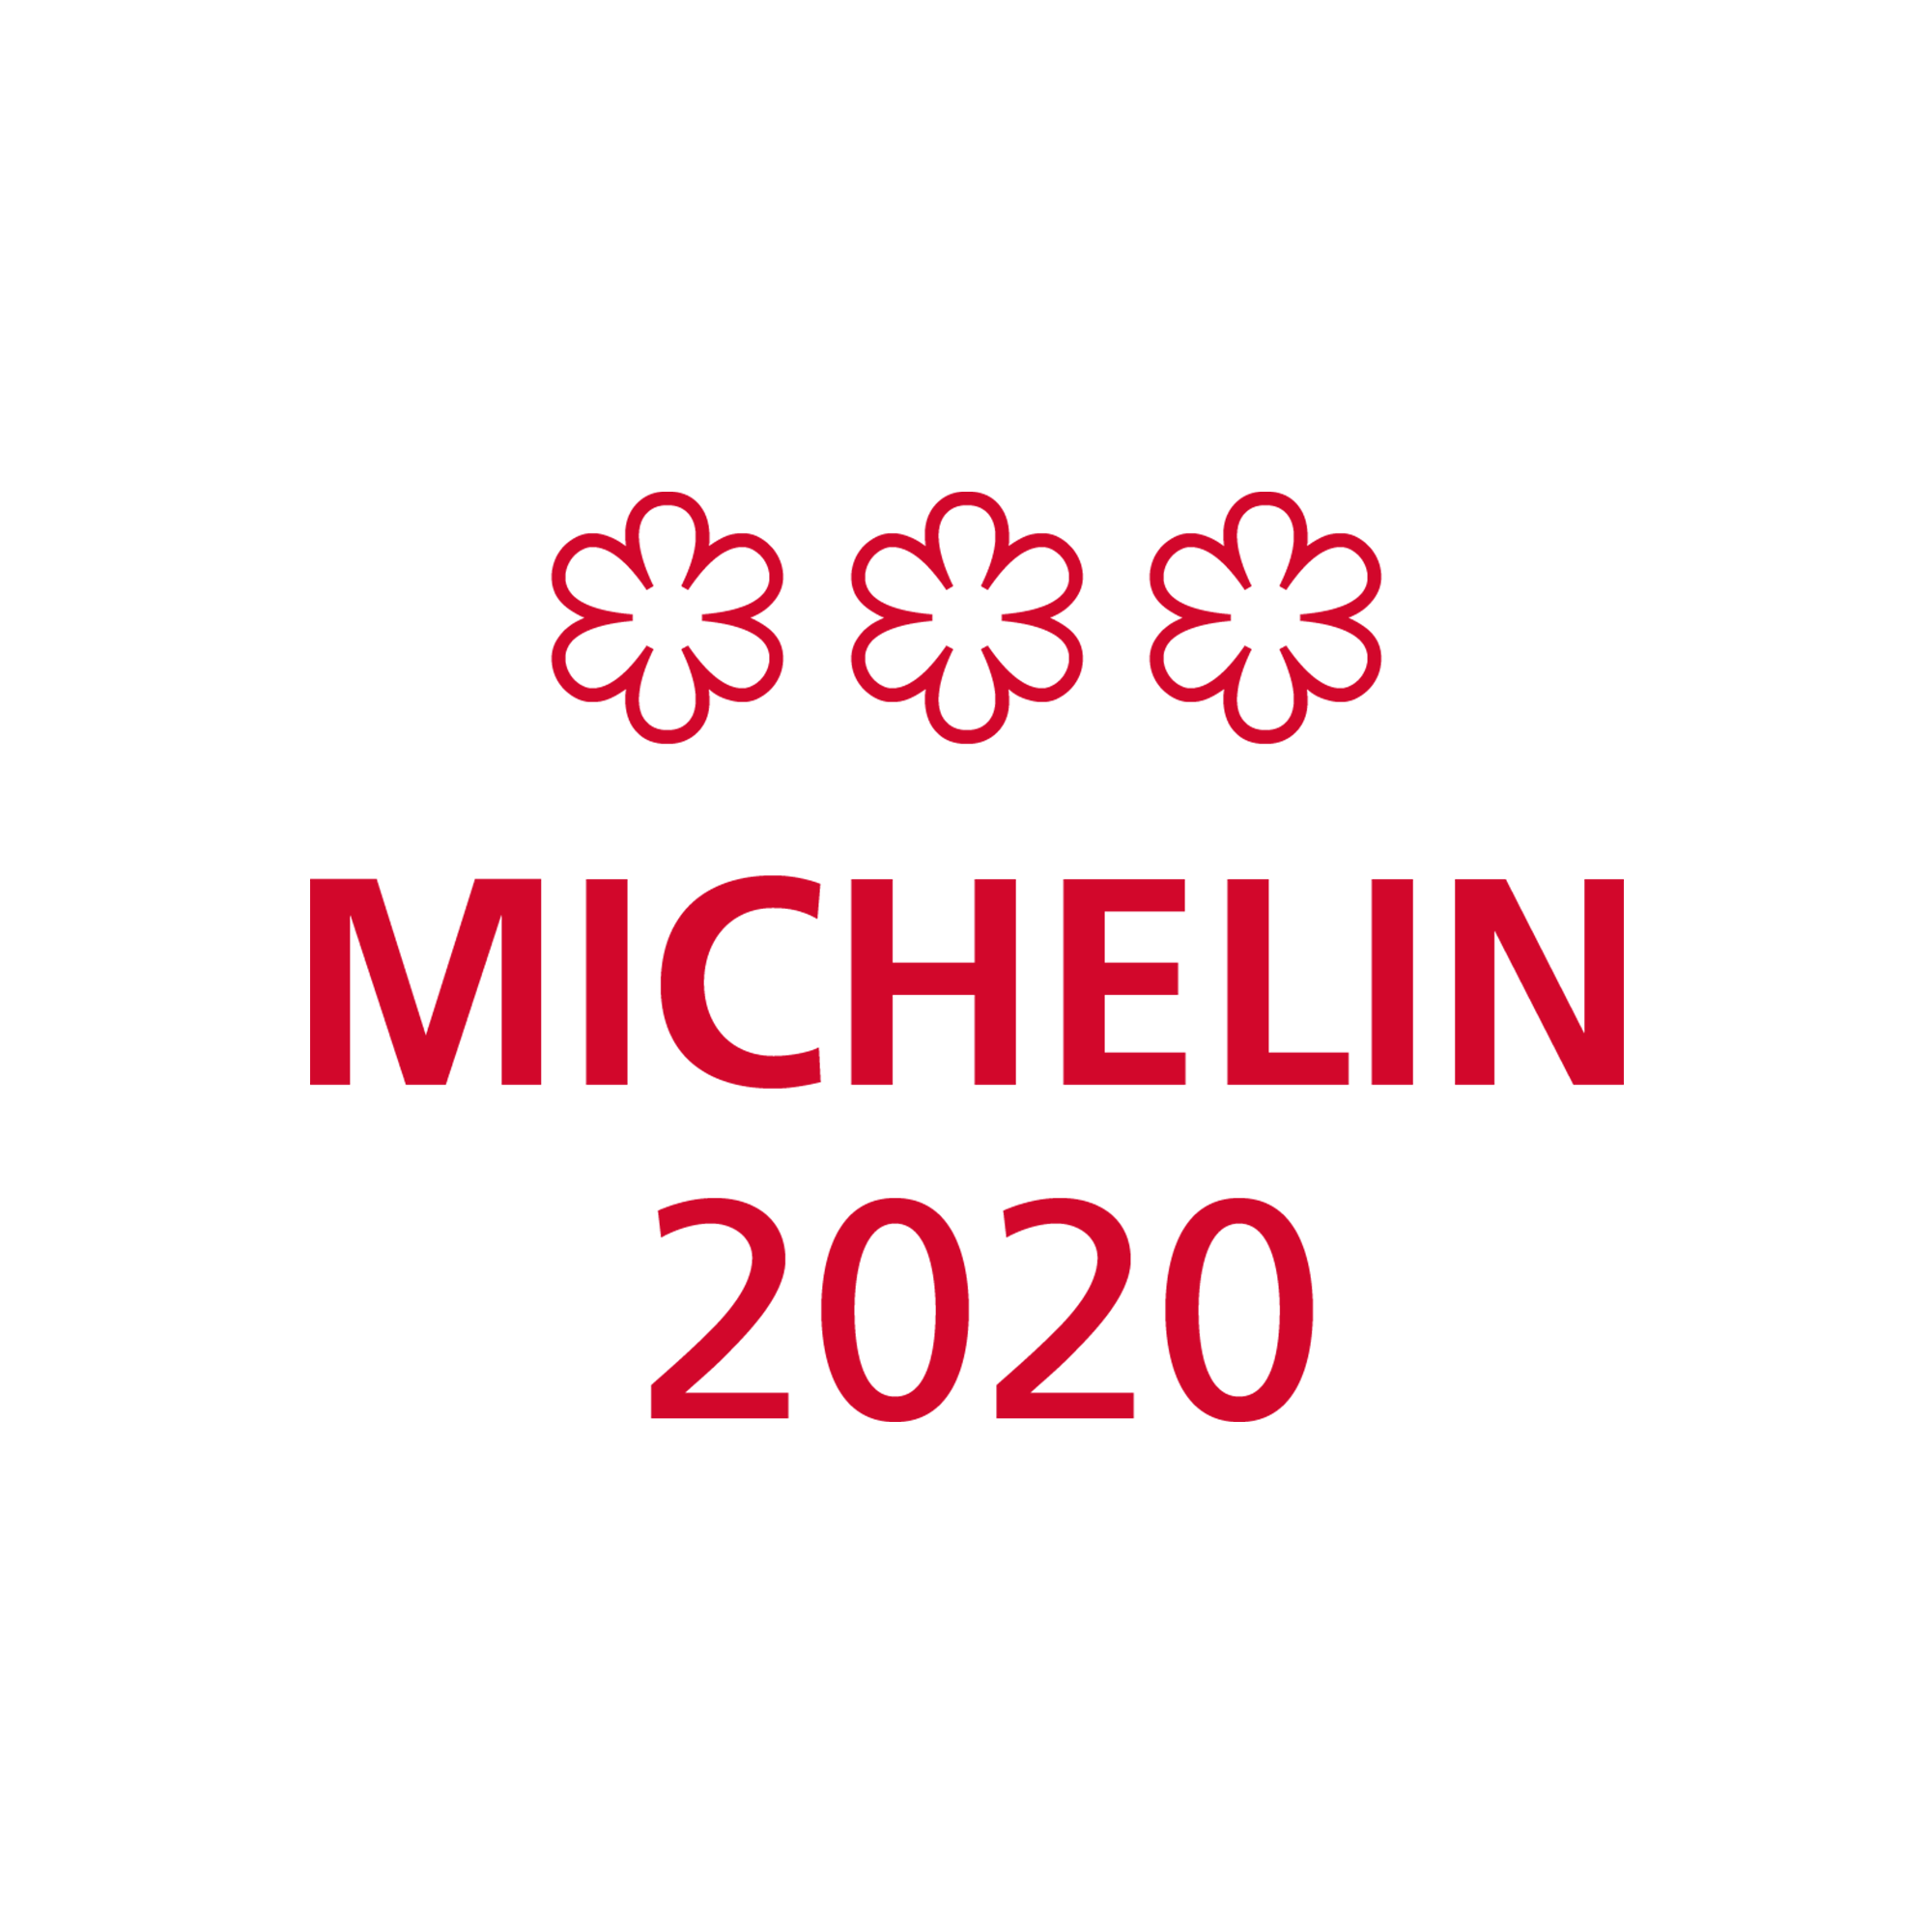 tlhkg-michelin-2020-award.png